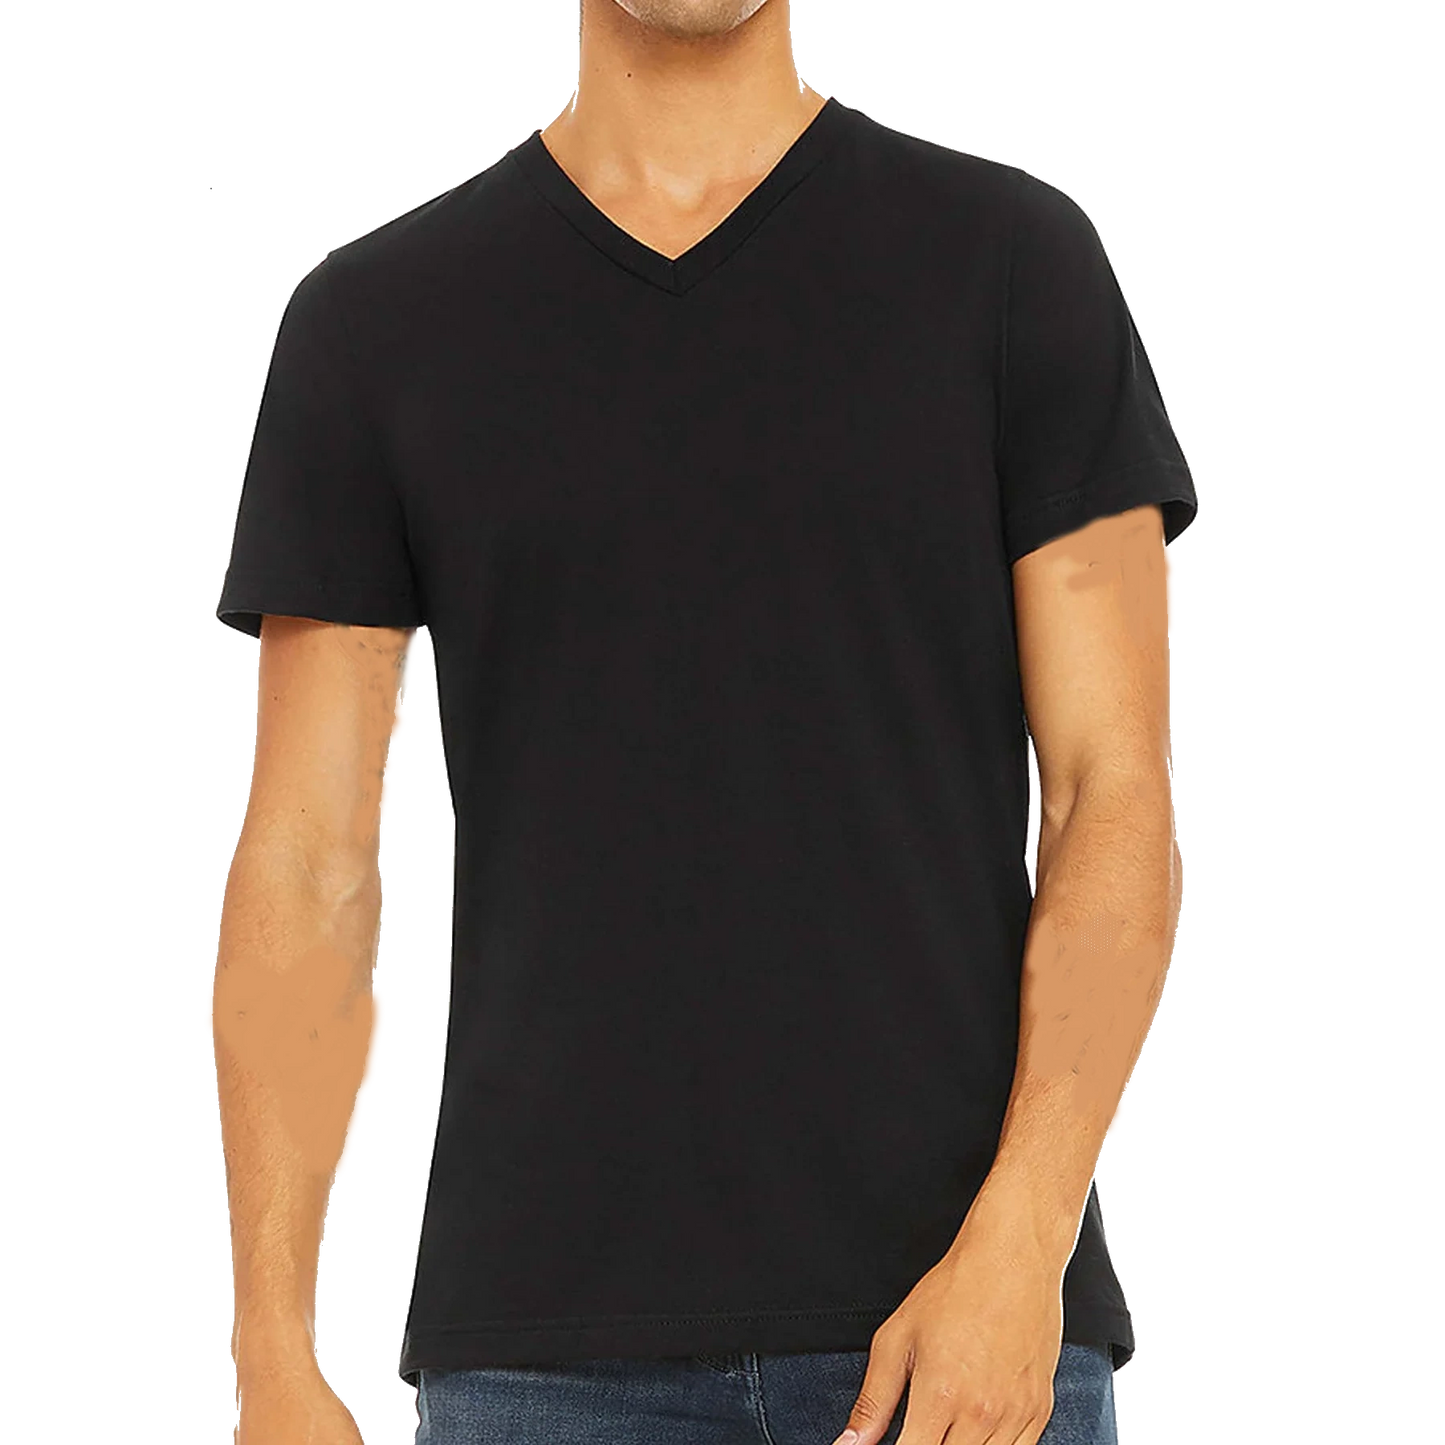 Blank V-Neck T-shirt for Unisex Adult